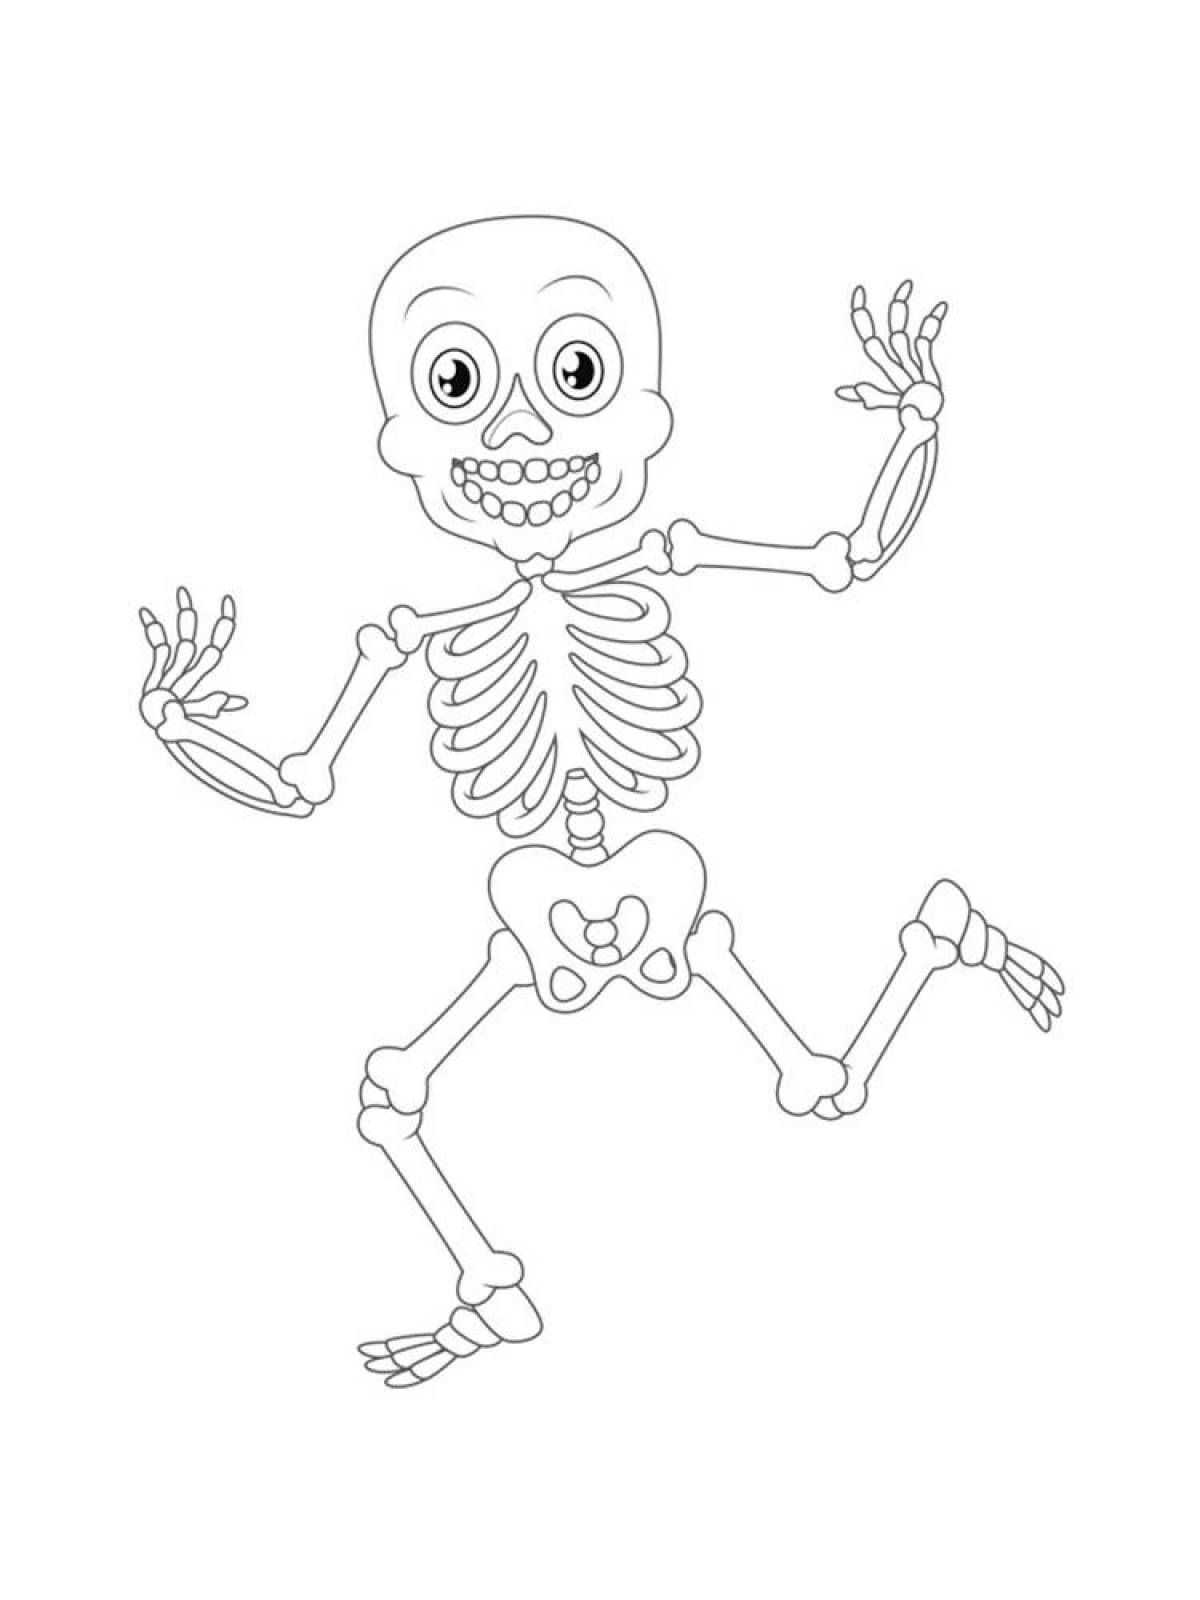 Раскраска скелет пирата на хэллоуин для взрослых | Премиум векторы